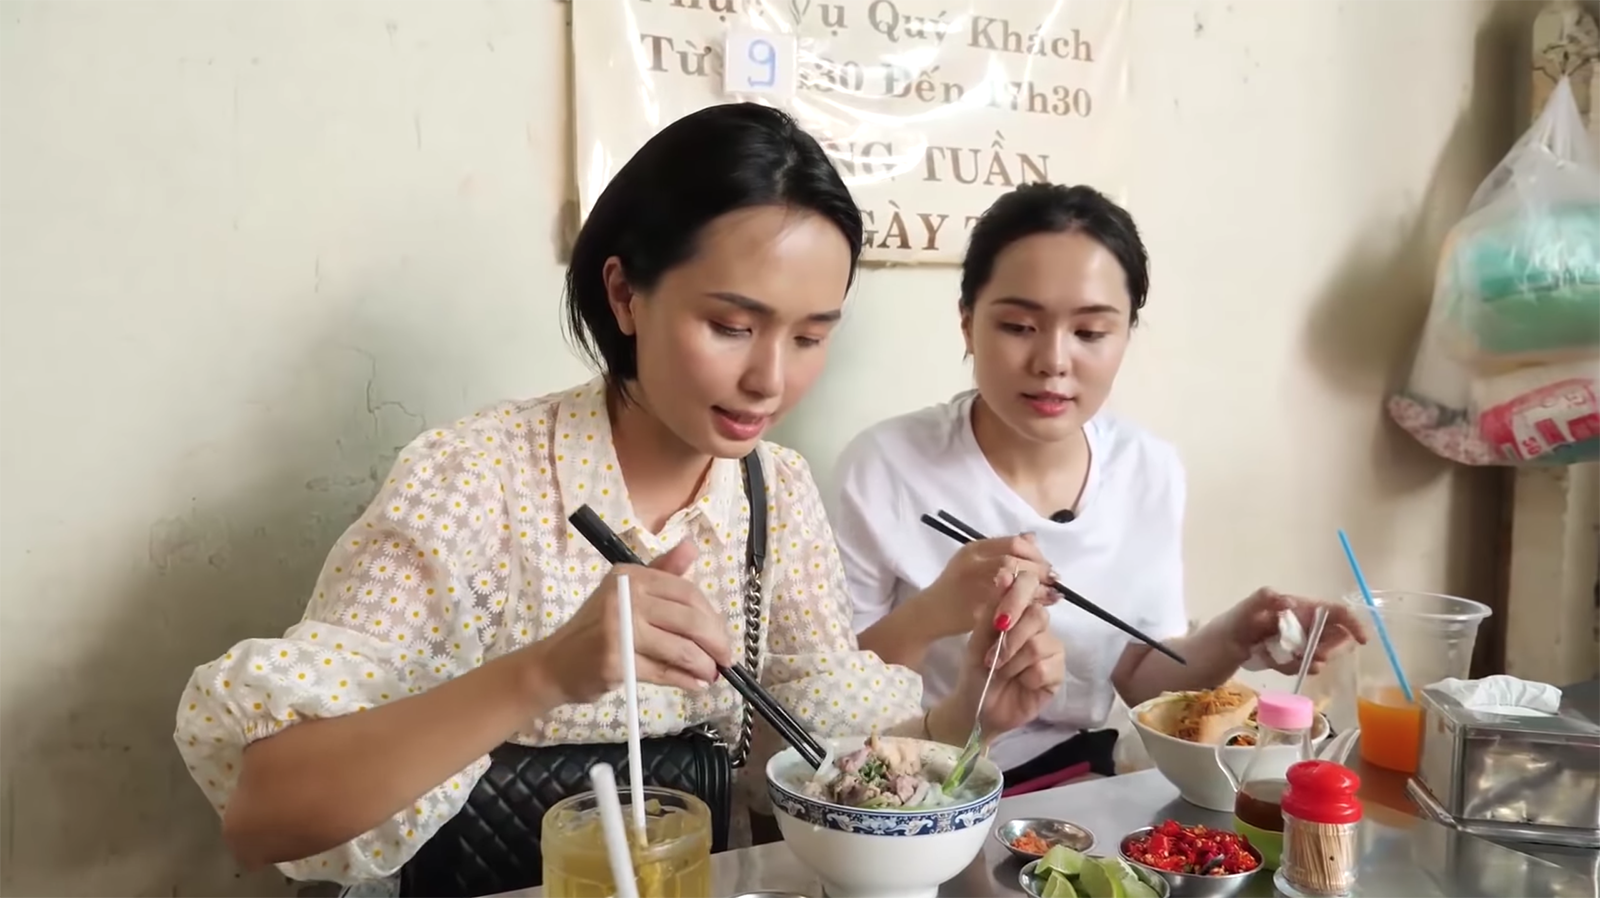 Sau clip đập hộp hàng hiệu, công chúa béo Quỳnh Anh - vợ Duy Mạnh bất ngờ chuyển hướng làm clip review ăn hàng - Ảnh 5.